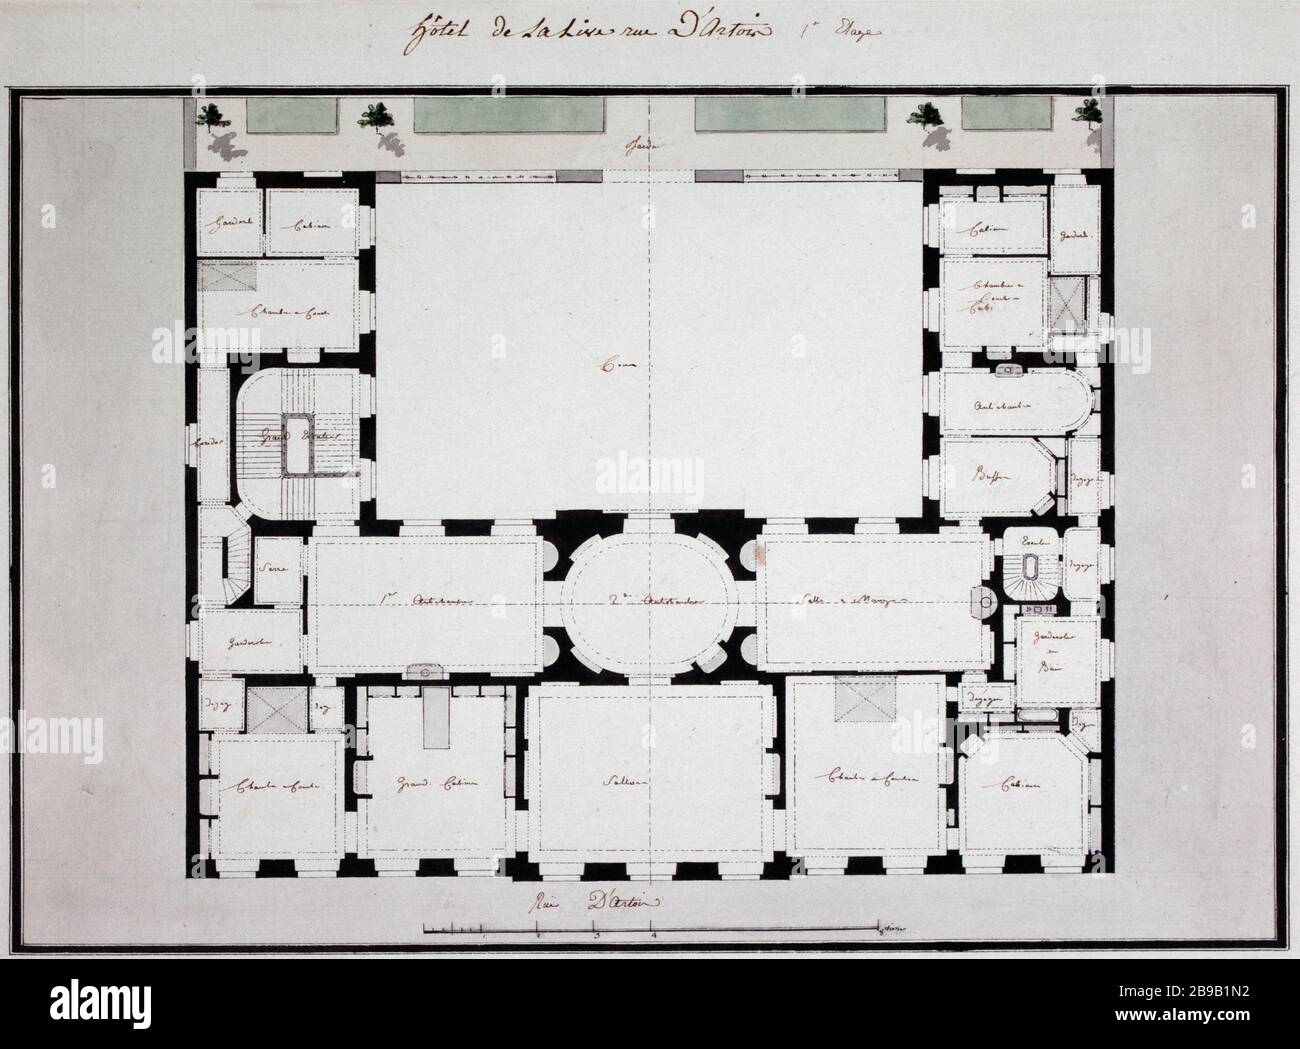 Hotel La Rue d'Artois Live Jean-Benoit-Vincent Barré (1735-1824). 'Hôtel de La Live rue d'Artois'.  Premier étage. Plume lavis, fin XVIIIème siècle. Paris, musée Carnavalet. Stock Photo